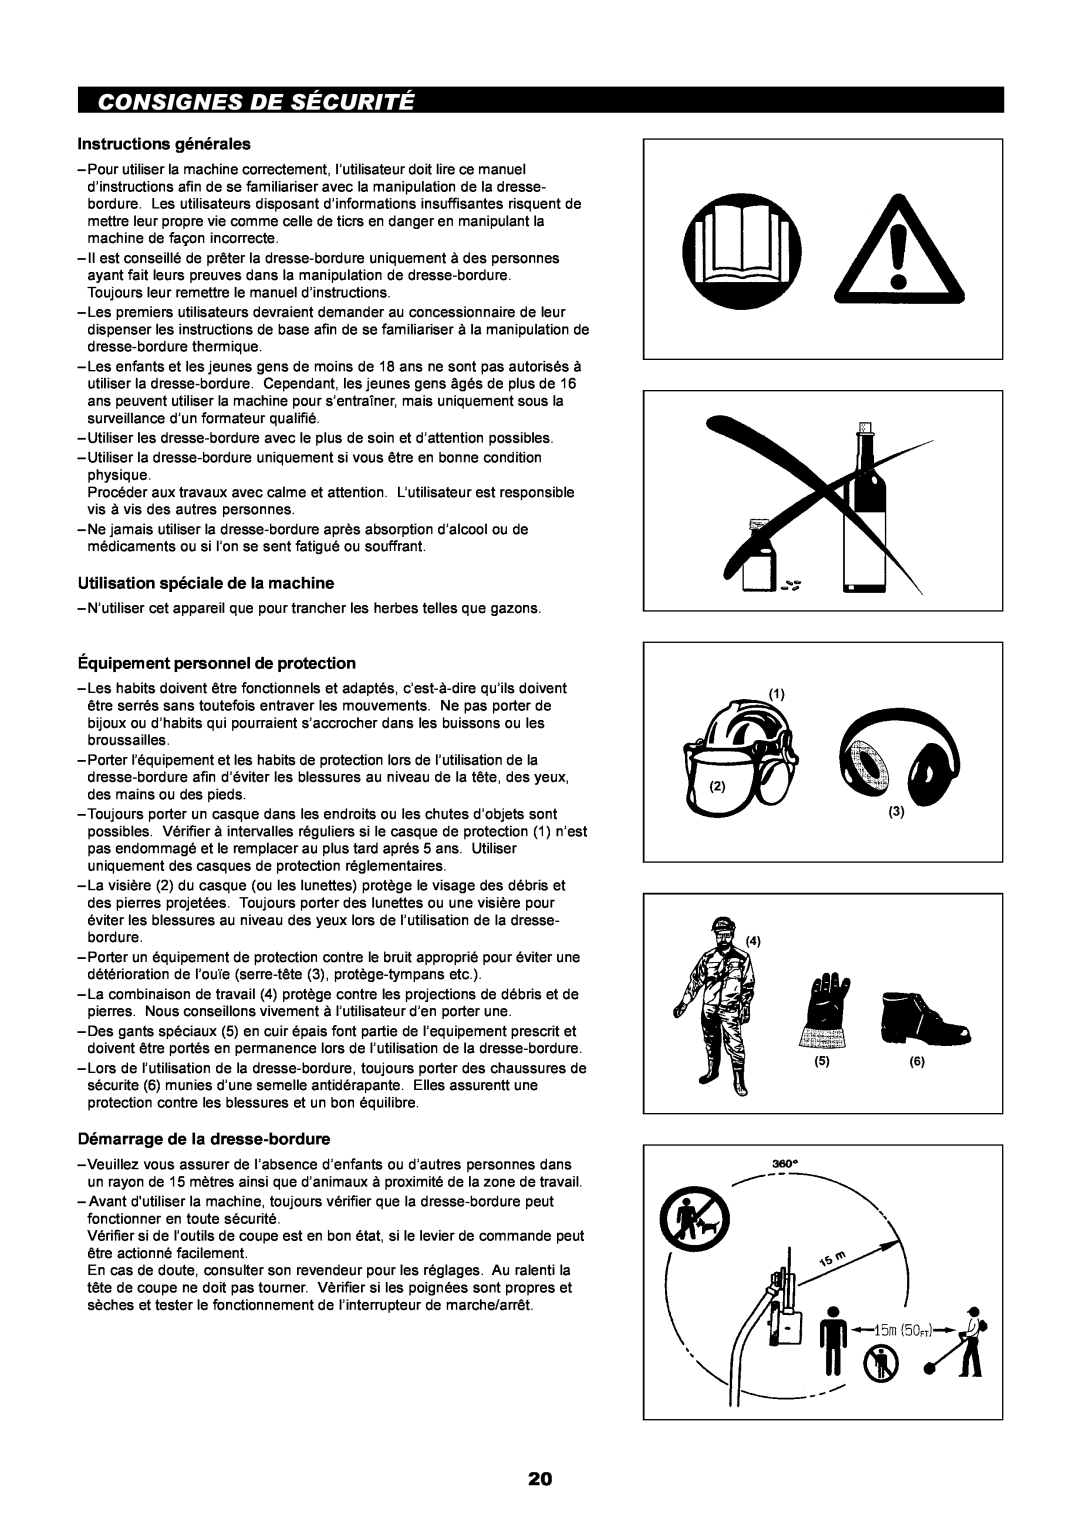 Dolmar PE-251 instruction manual Consignes De Sécurité, Instructions générales, Utilisation spéciale de la machine 